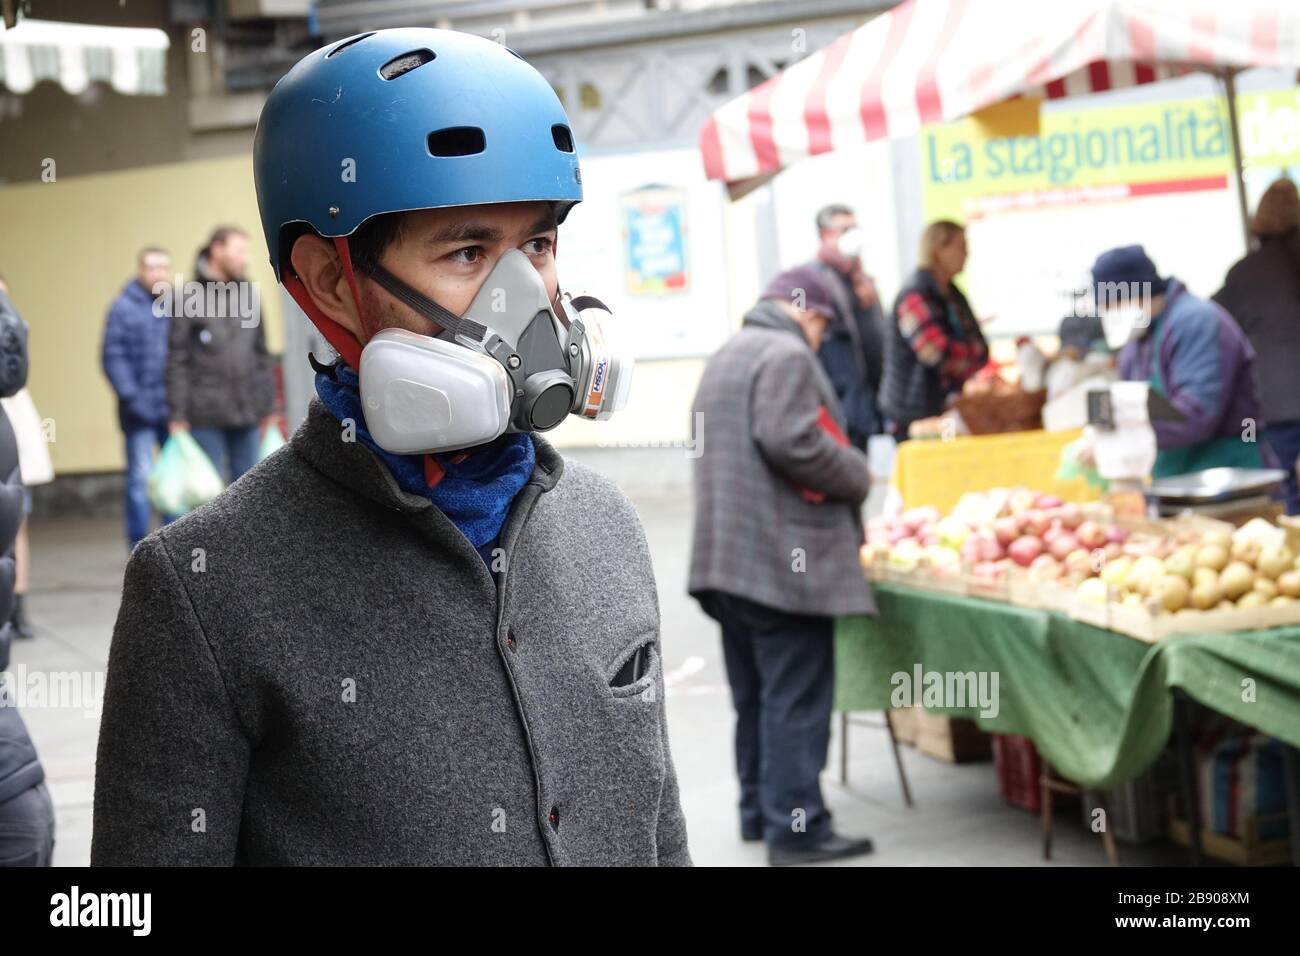 Uomo che indossa le maschere per contenere la diffusione del Coronavirus. Milano, Italia - Marzo 2020 Foto Stock